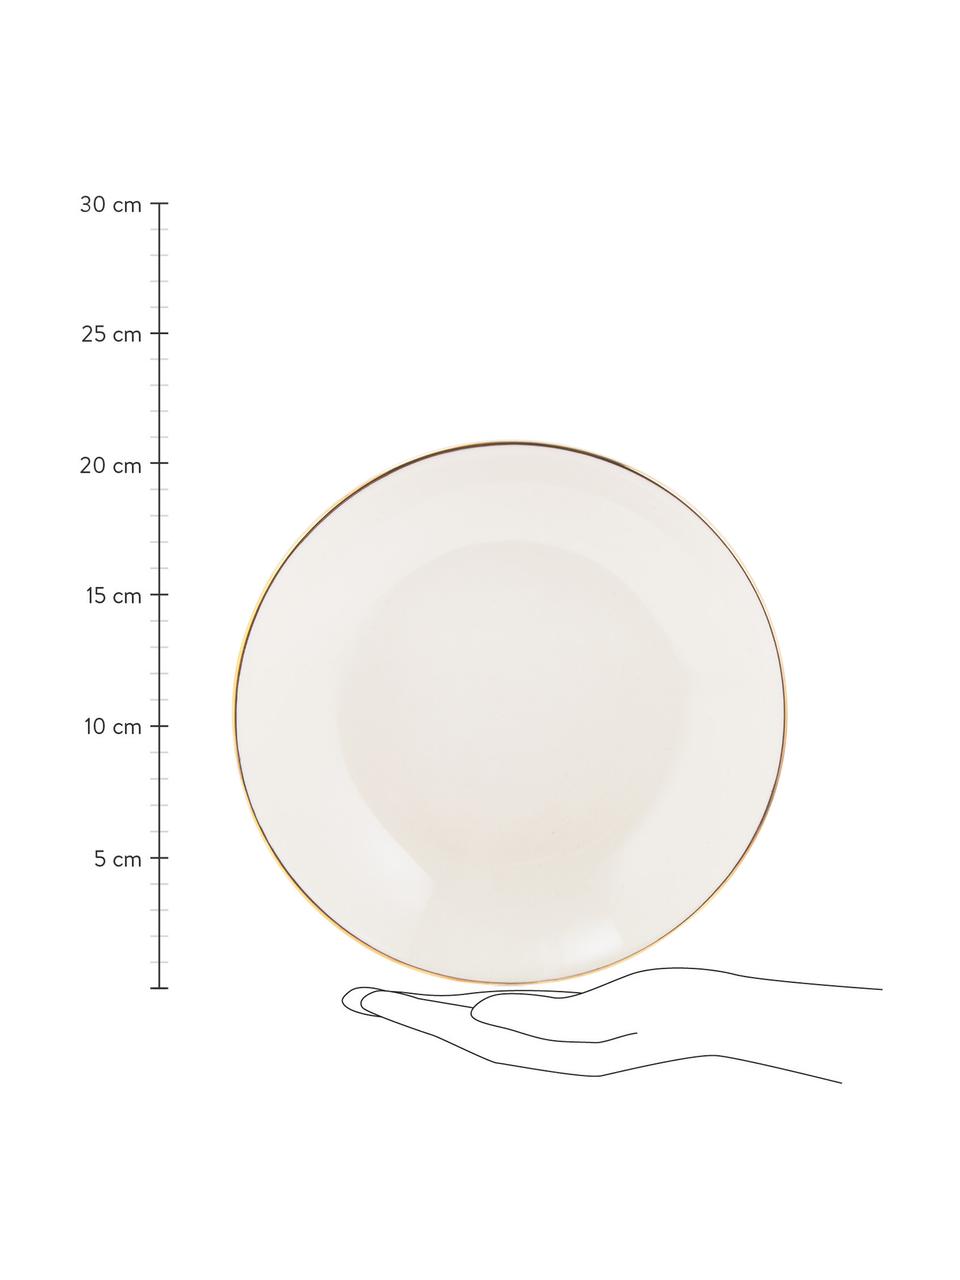 Ręcznie wykonany talerz głęboki Allure, 6 szt., Ceramika, Biały, odcienie złotego, Ø 21 cm